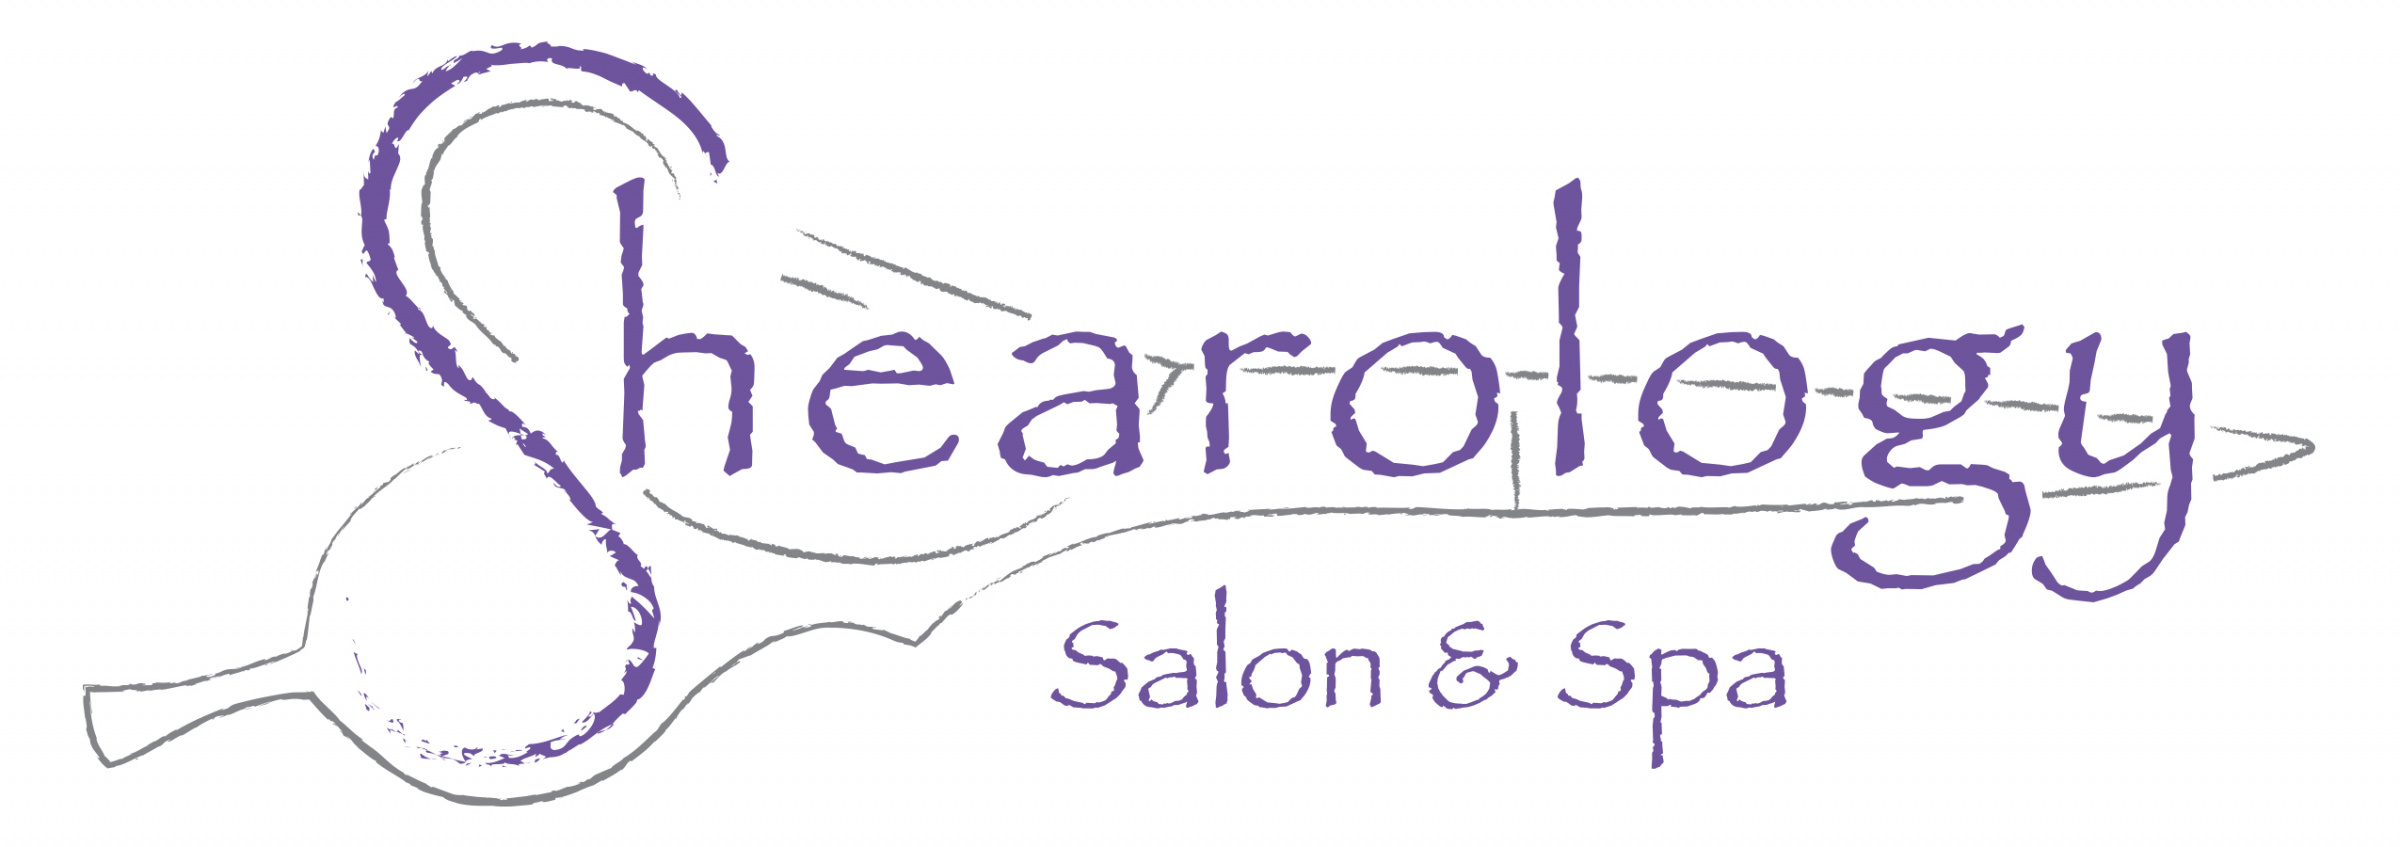 Shearology Salon & Spa logo